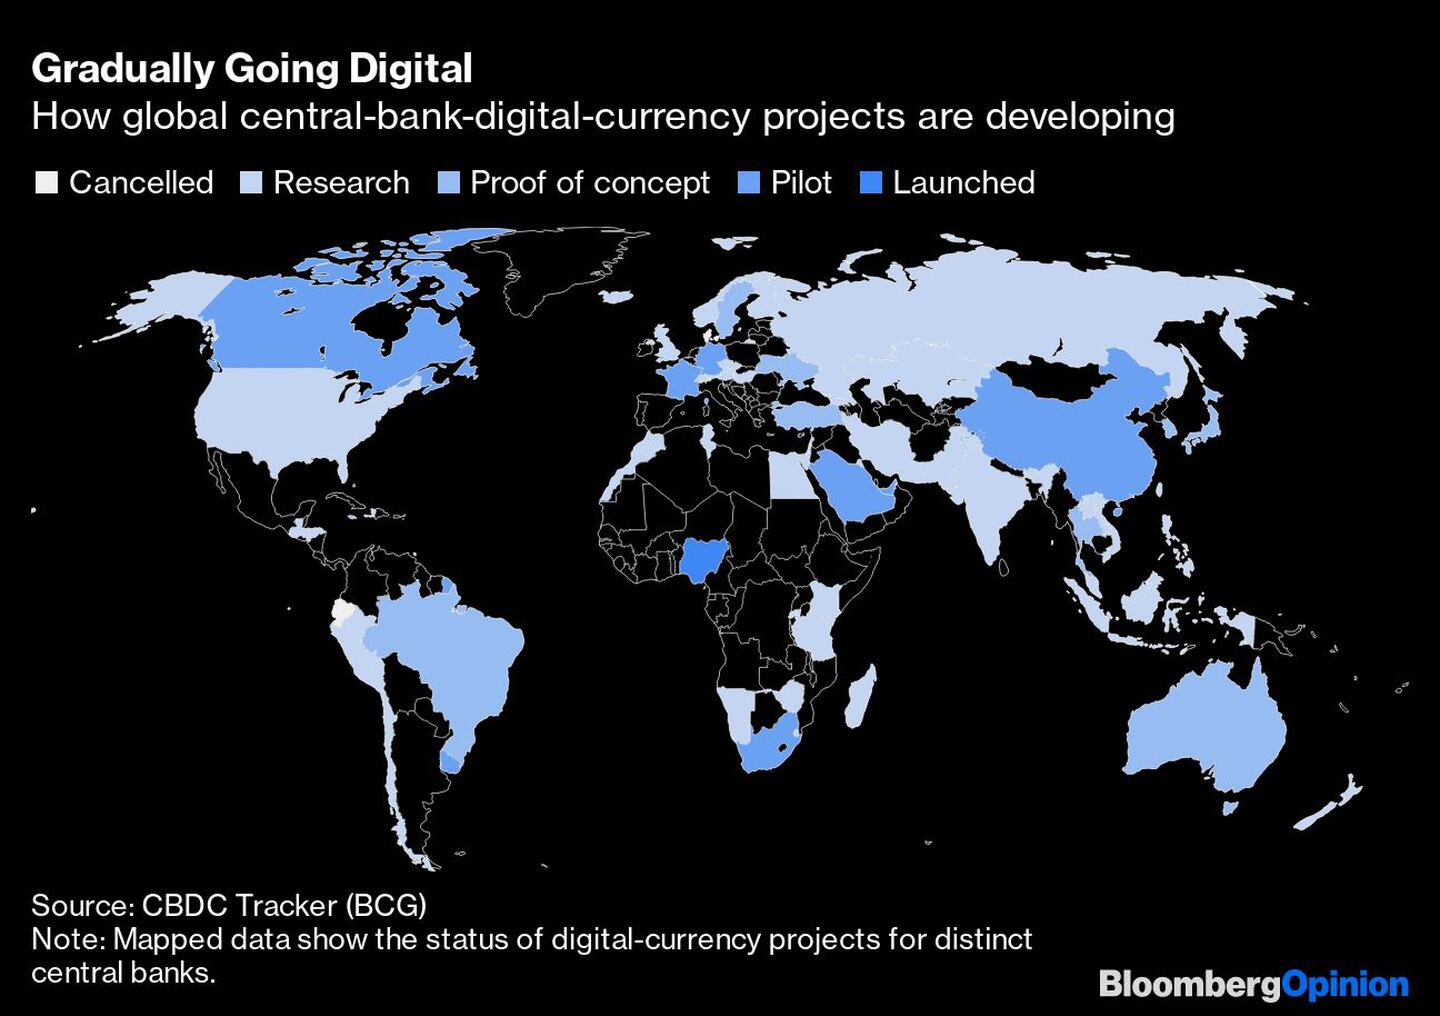 La digitalización gradual 
Cómo se desarrollan los proyectos mundiales de bancos centrales y monedas digitales
Blanco: Cancelado
Gris: Investigación 
Azul gris: prueba de concepto
Azul claro: Piloto
Azul: Lanzadodfd